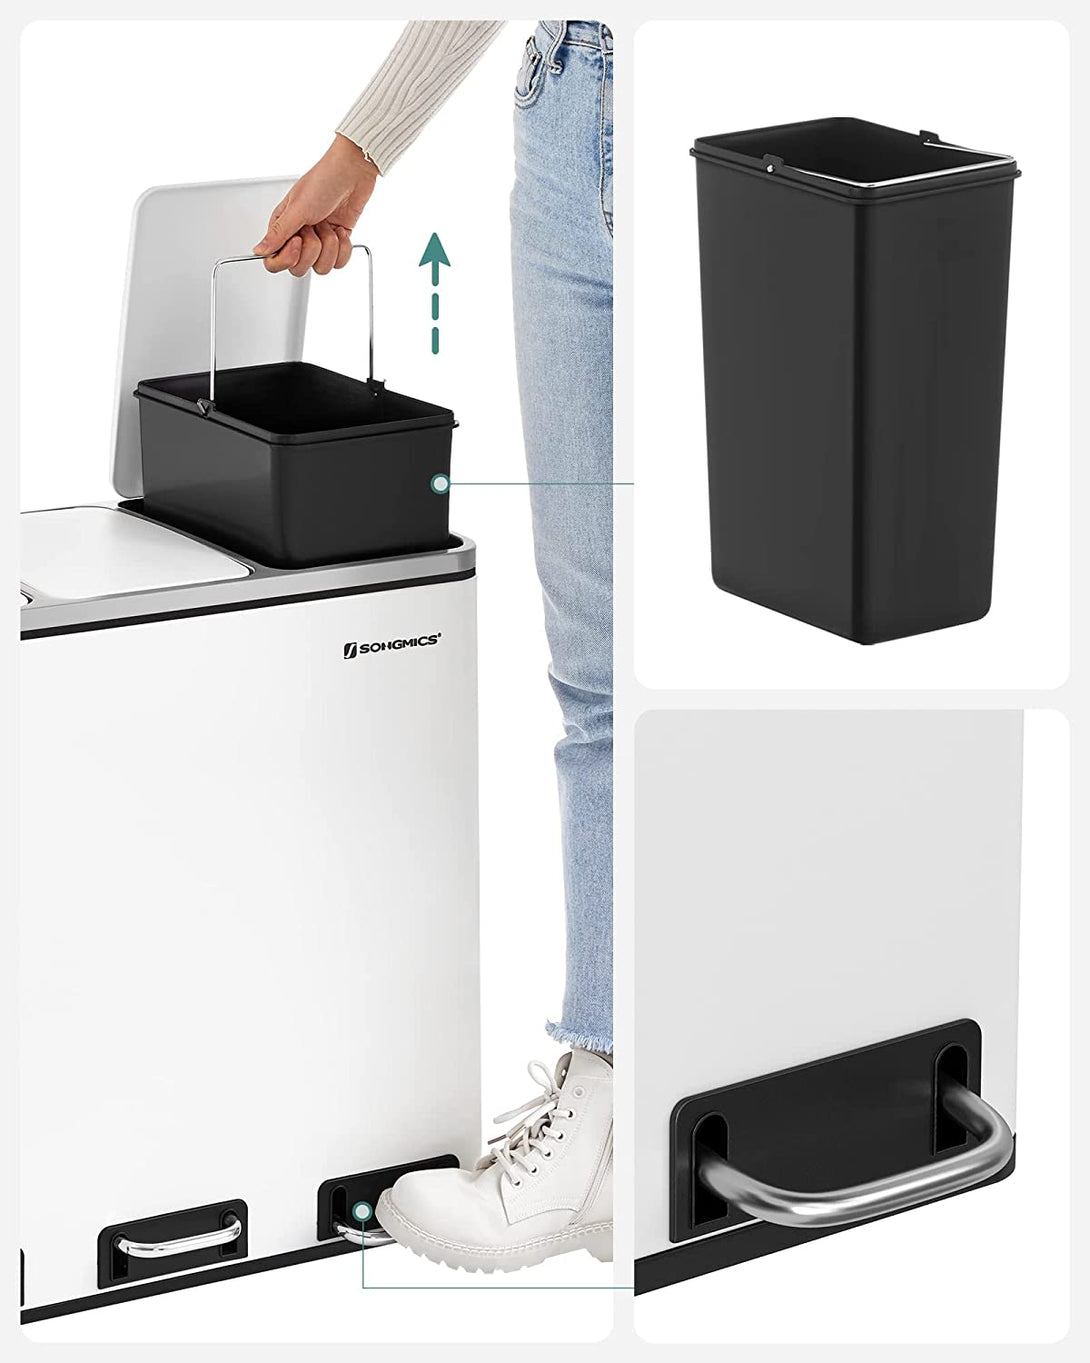 Kuhinjski koš na pedala, Selektivni zbiralnik odpadkov, 3 x 18 L, bel | SONGMICS-Vasdom.si